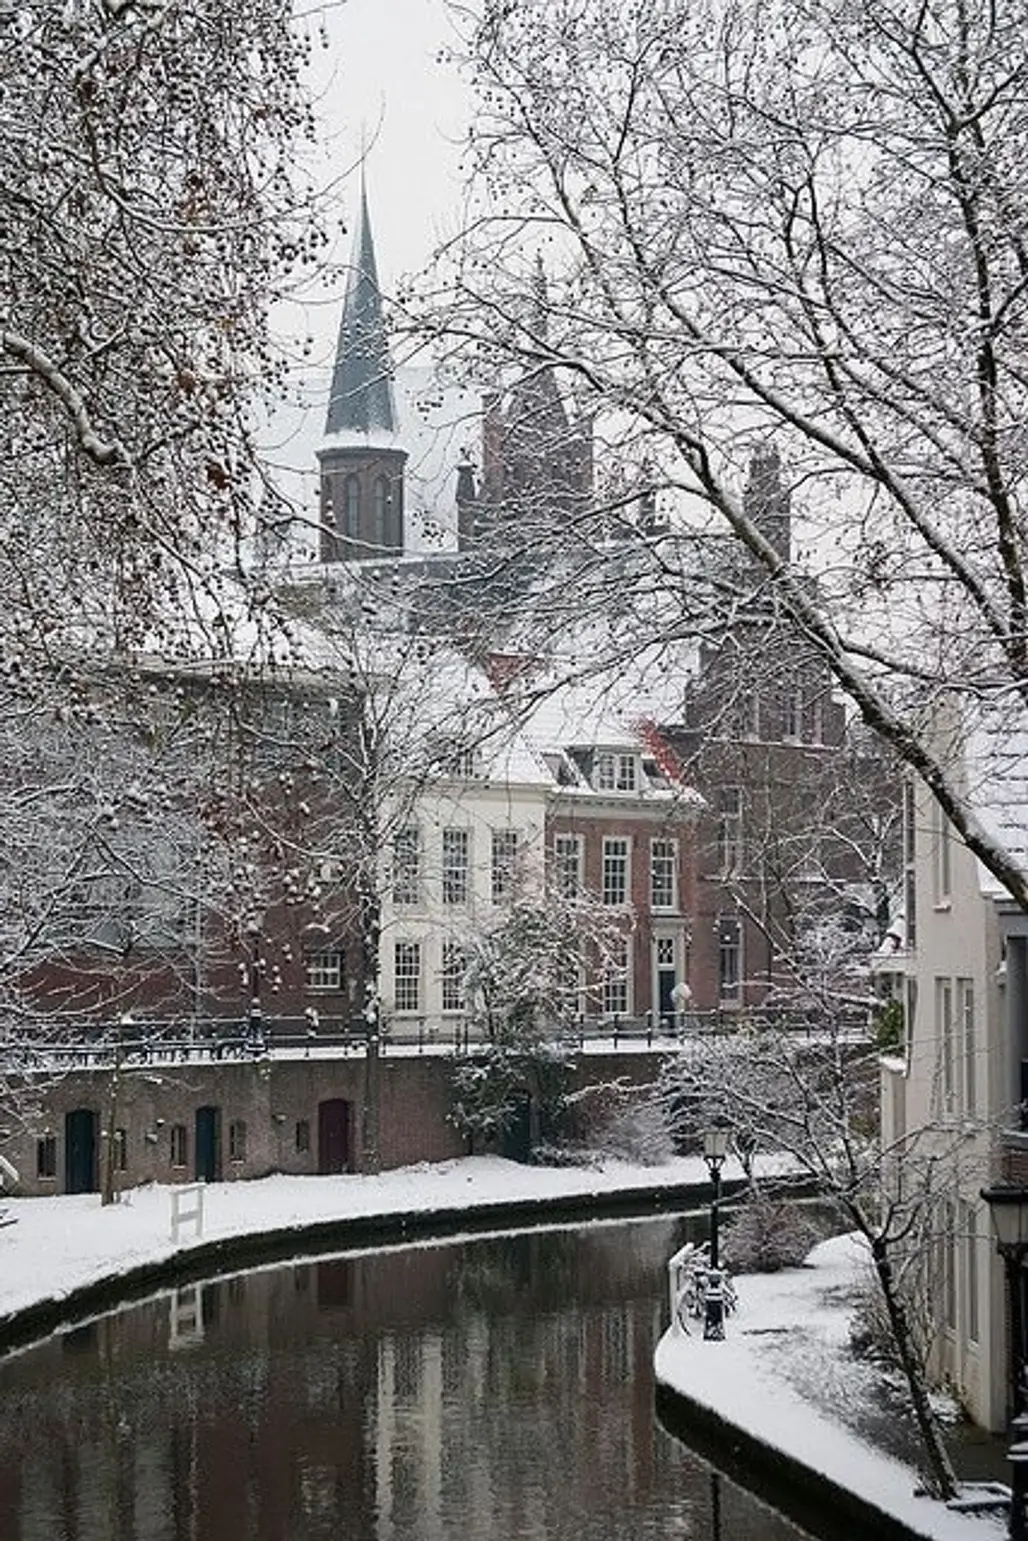 Utrecht, the Netherlands